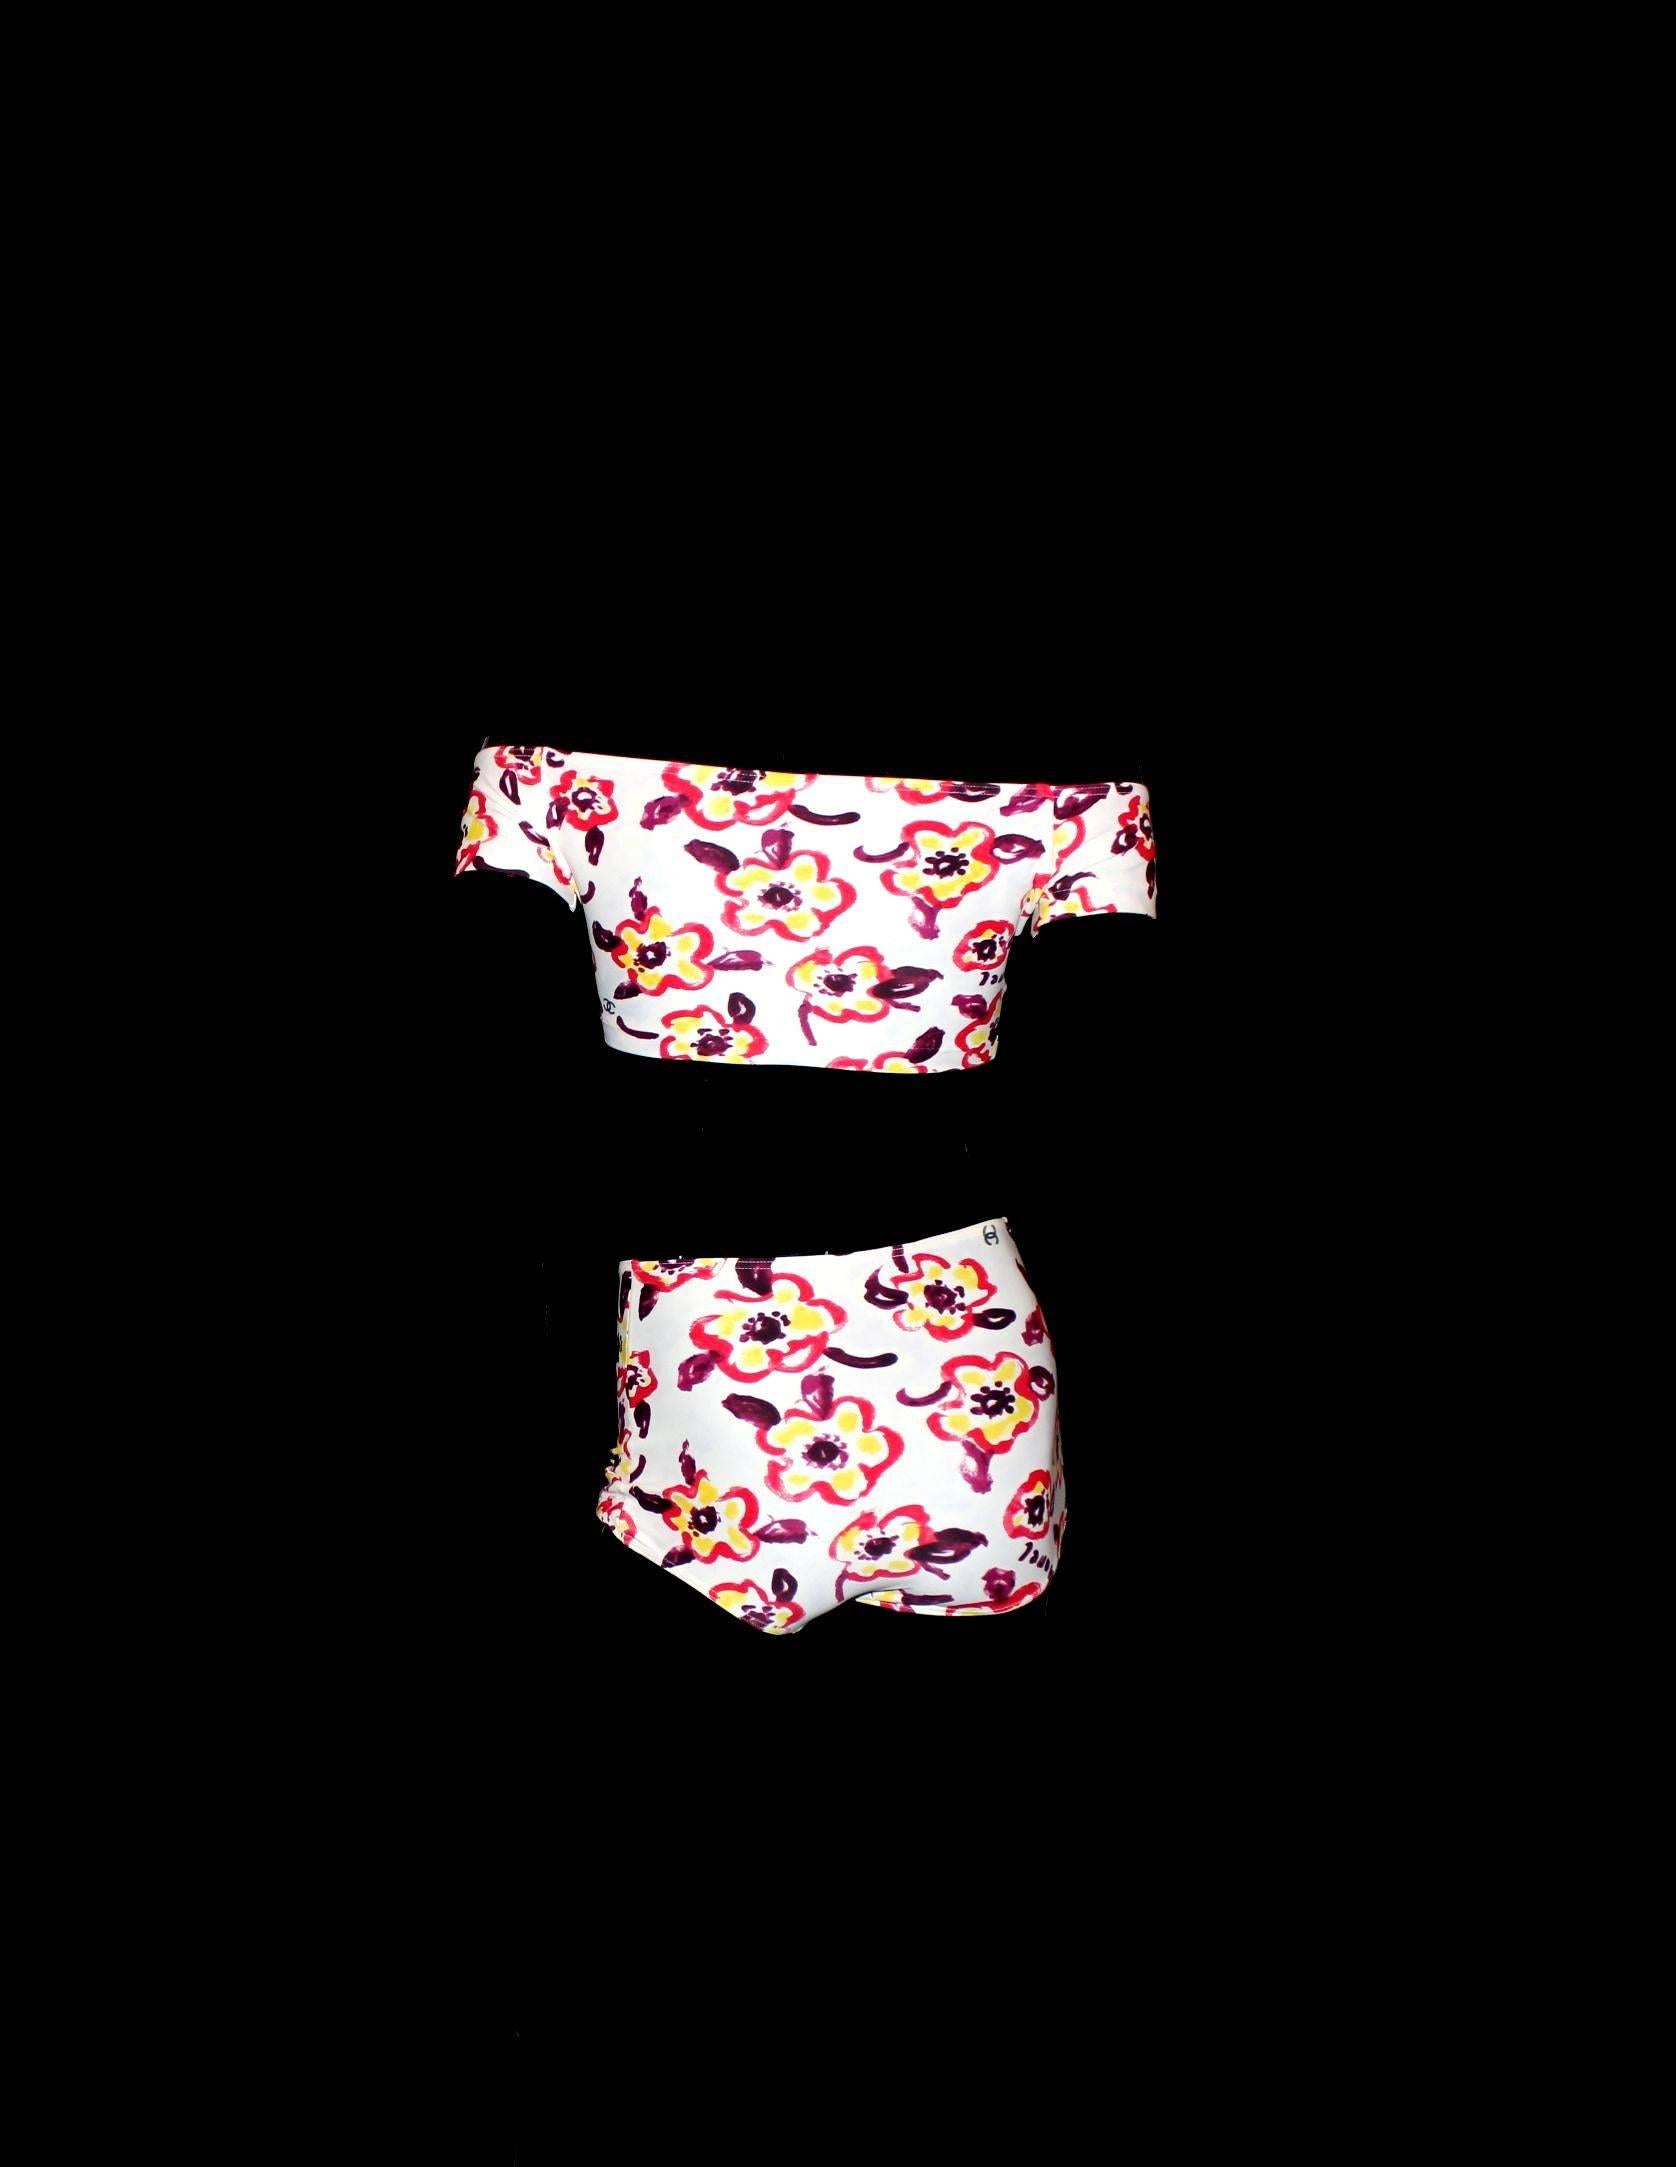 Women's Chanel Camellia CC Logo Print Top Hot Pants Bikini Swimsuit Beach Set Ensemble